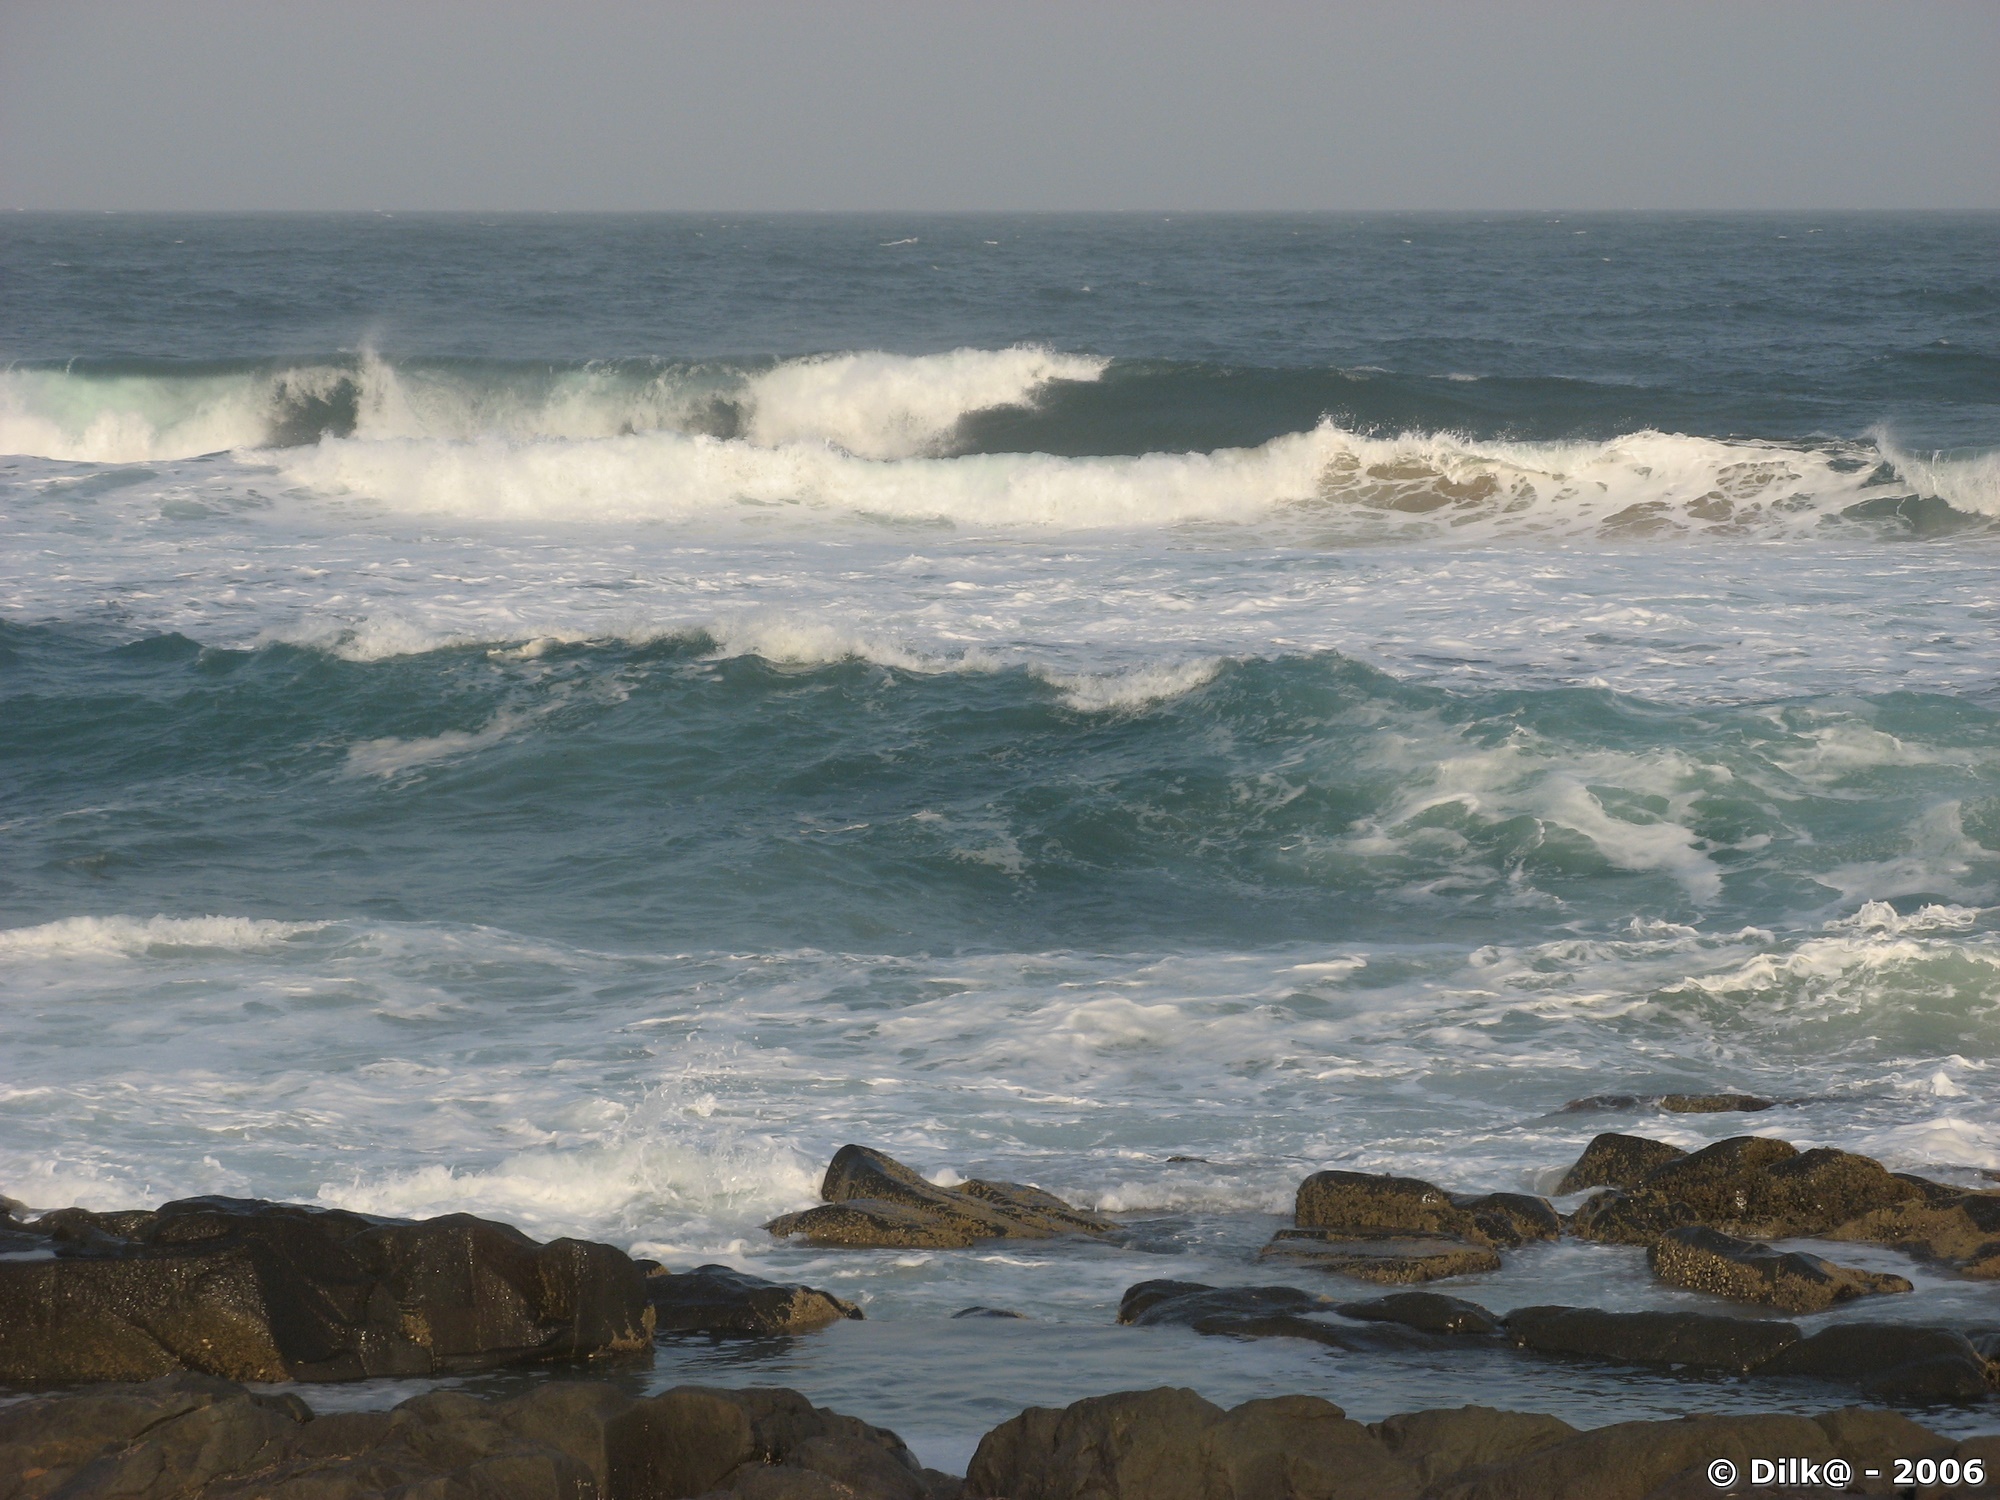 L'océan Indien : le vent et les vagues immenses